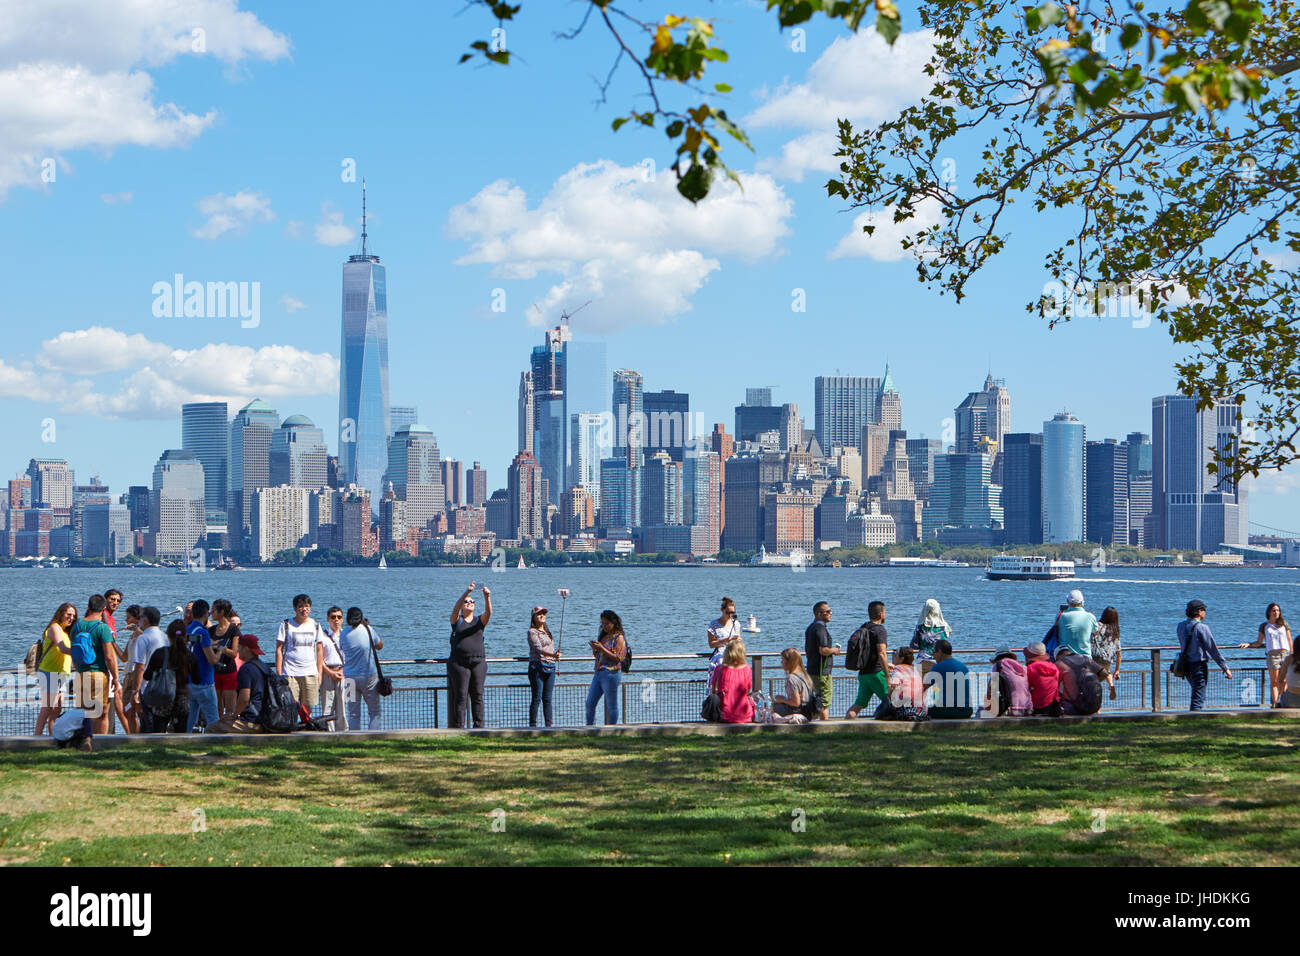 NEW YORK - 12 SEPTEMBRE : les gens et les touristes à la recherche et à la prise de vue vos autoportraits New York city skyline dans une journée ensoleillée le 12 septembre 2017 à New York. Banque D'Images